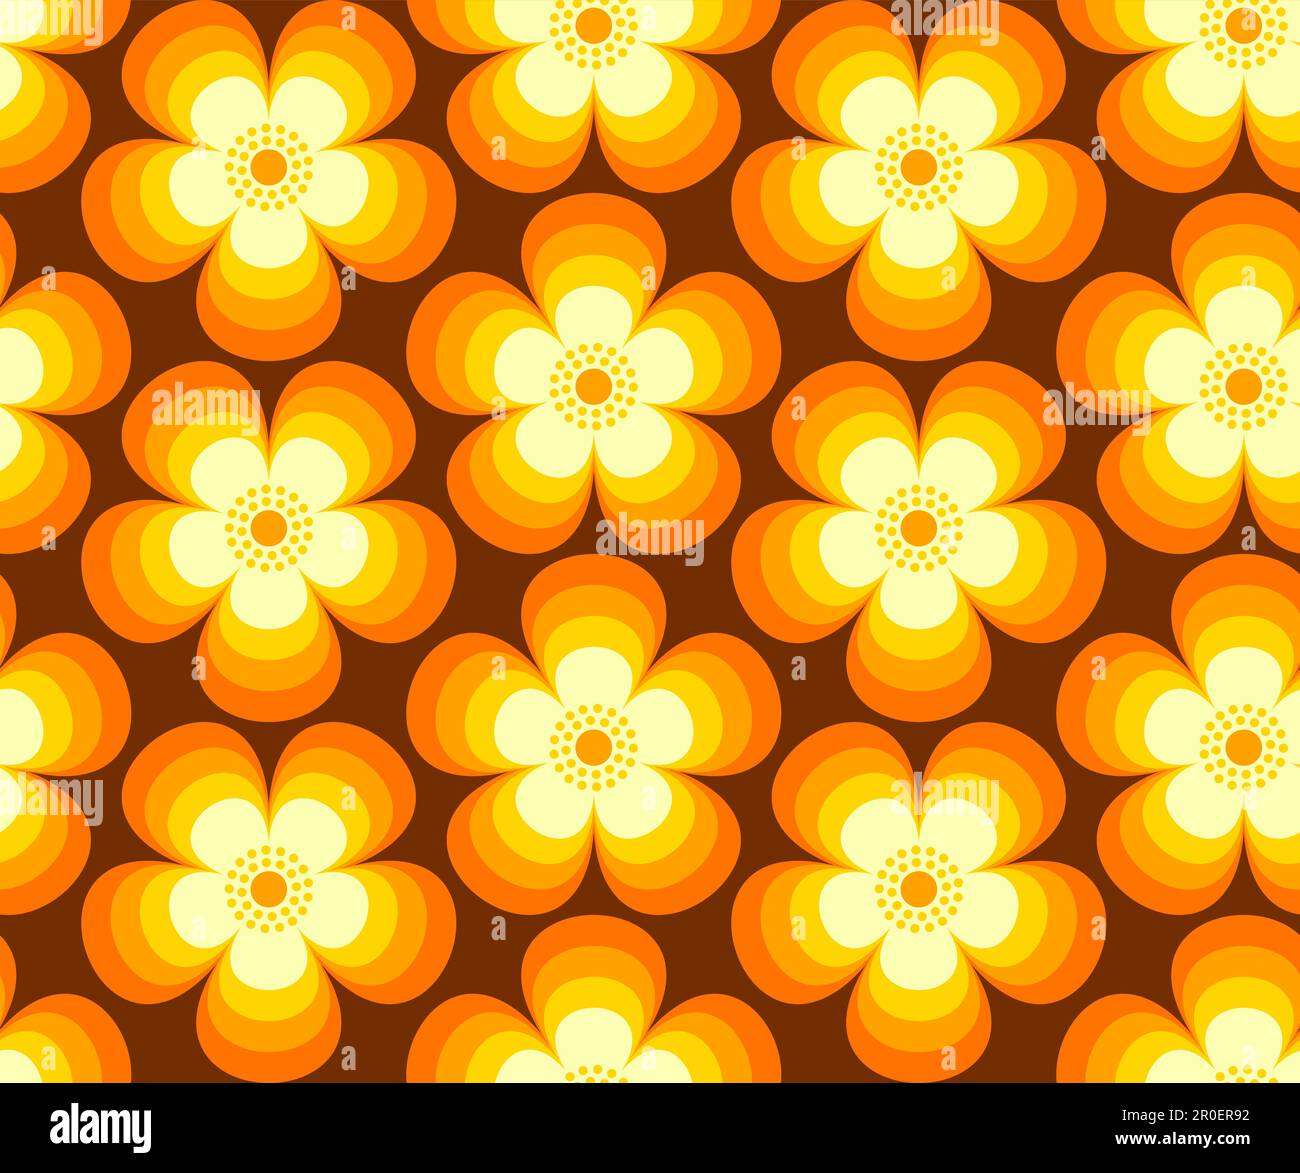 Fleurs rétro, fleurs modernes du milieu du siècle dans les couleurs orange, jaune et marron. Pour la décoration, le papier peint, les tissus et le textile. Motif vectoriel transparent, 19 Illustration de Vecteur